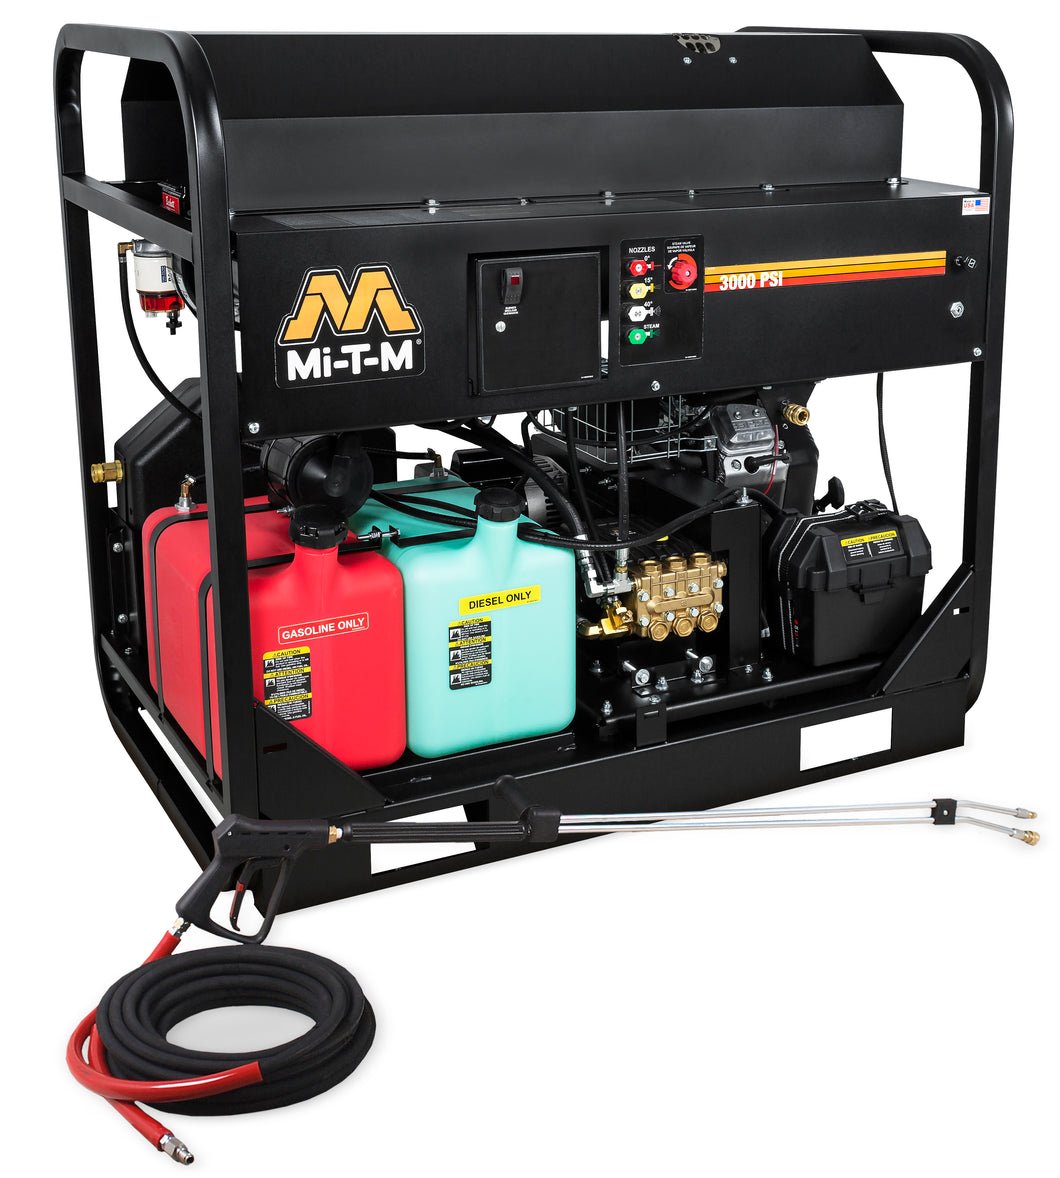 Mi-T-M HS Series Hot Water Gasoline/Diesel Belt Drive Pressure Washer - Skid Frame